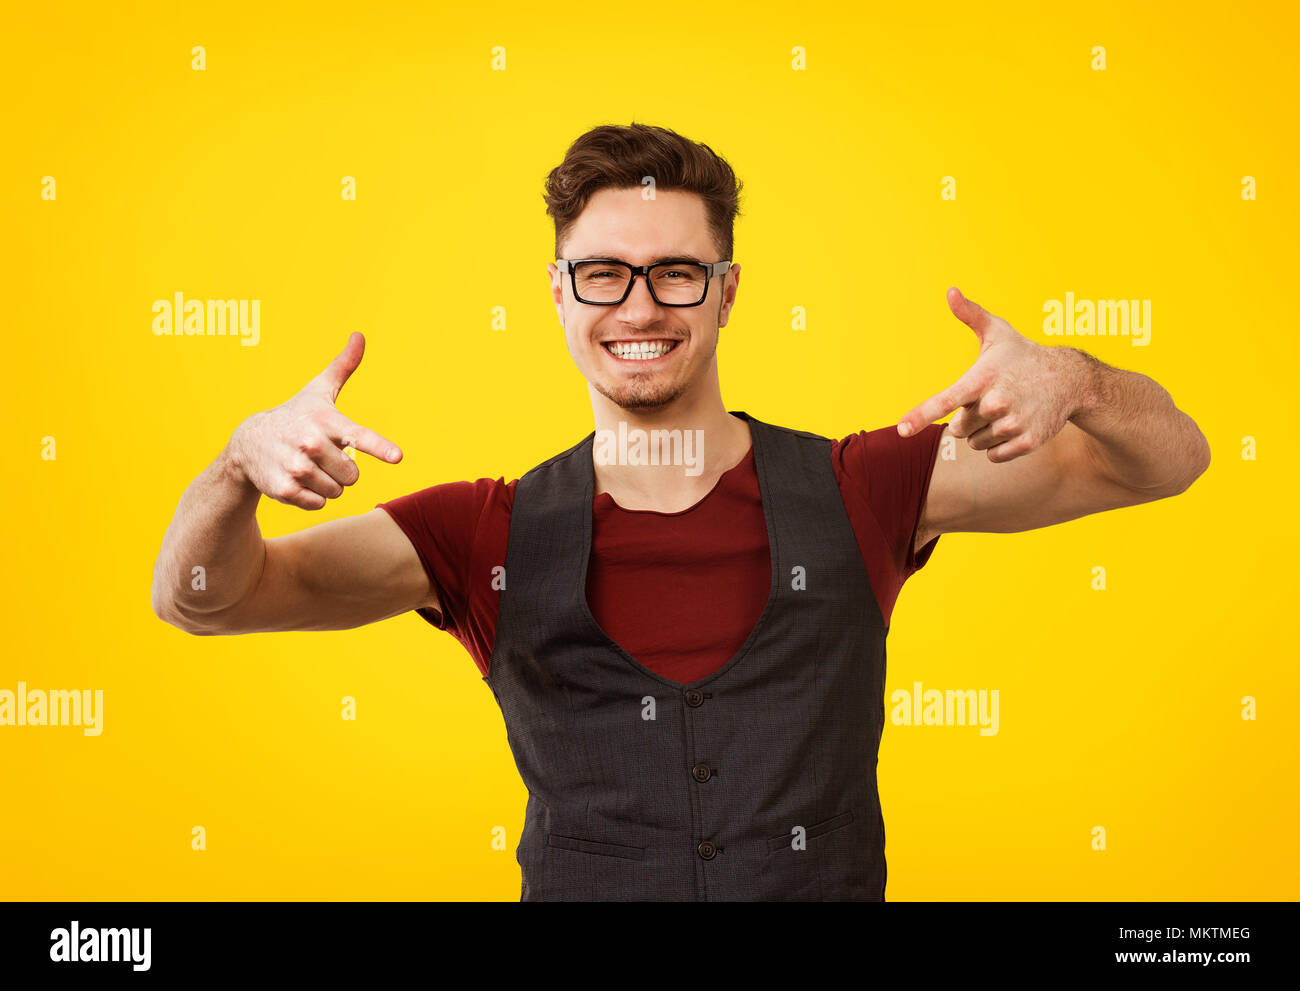 Portrait des jungen Mannes im stilvollen cooles Outfit und Gläser ausdrücklich posiert auf gelbem Hintergrund Stockfoto